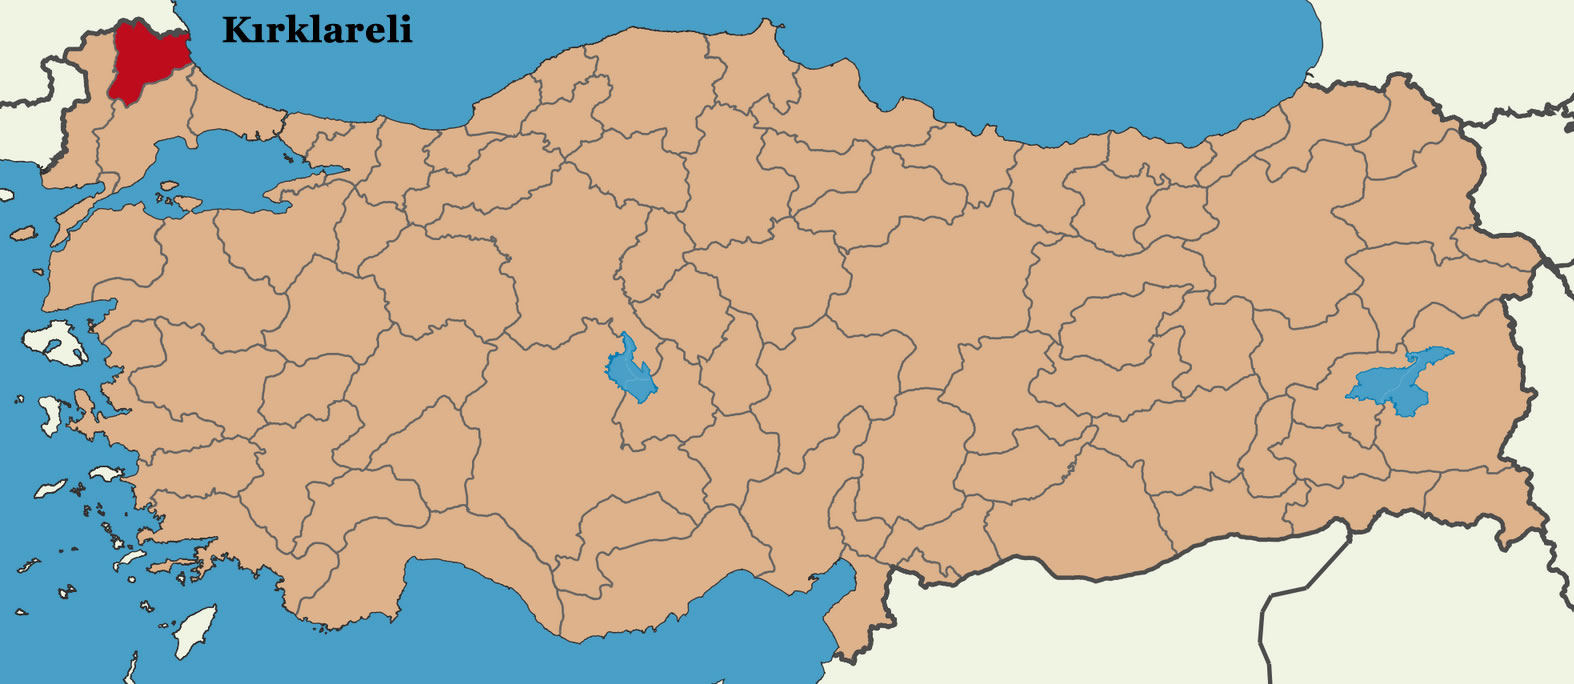 kirklareli turkey map